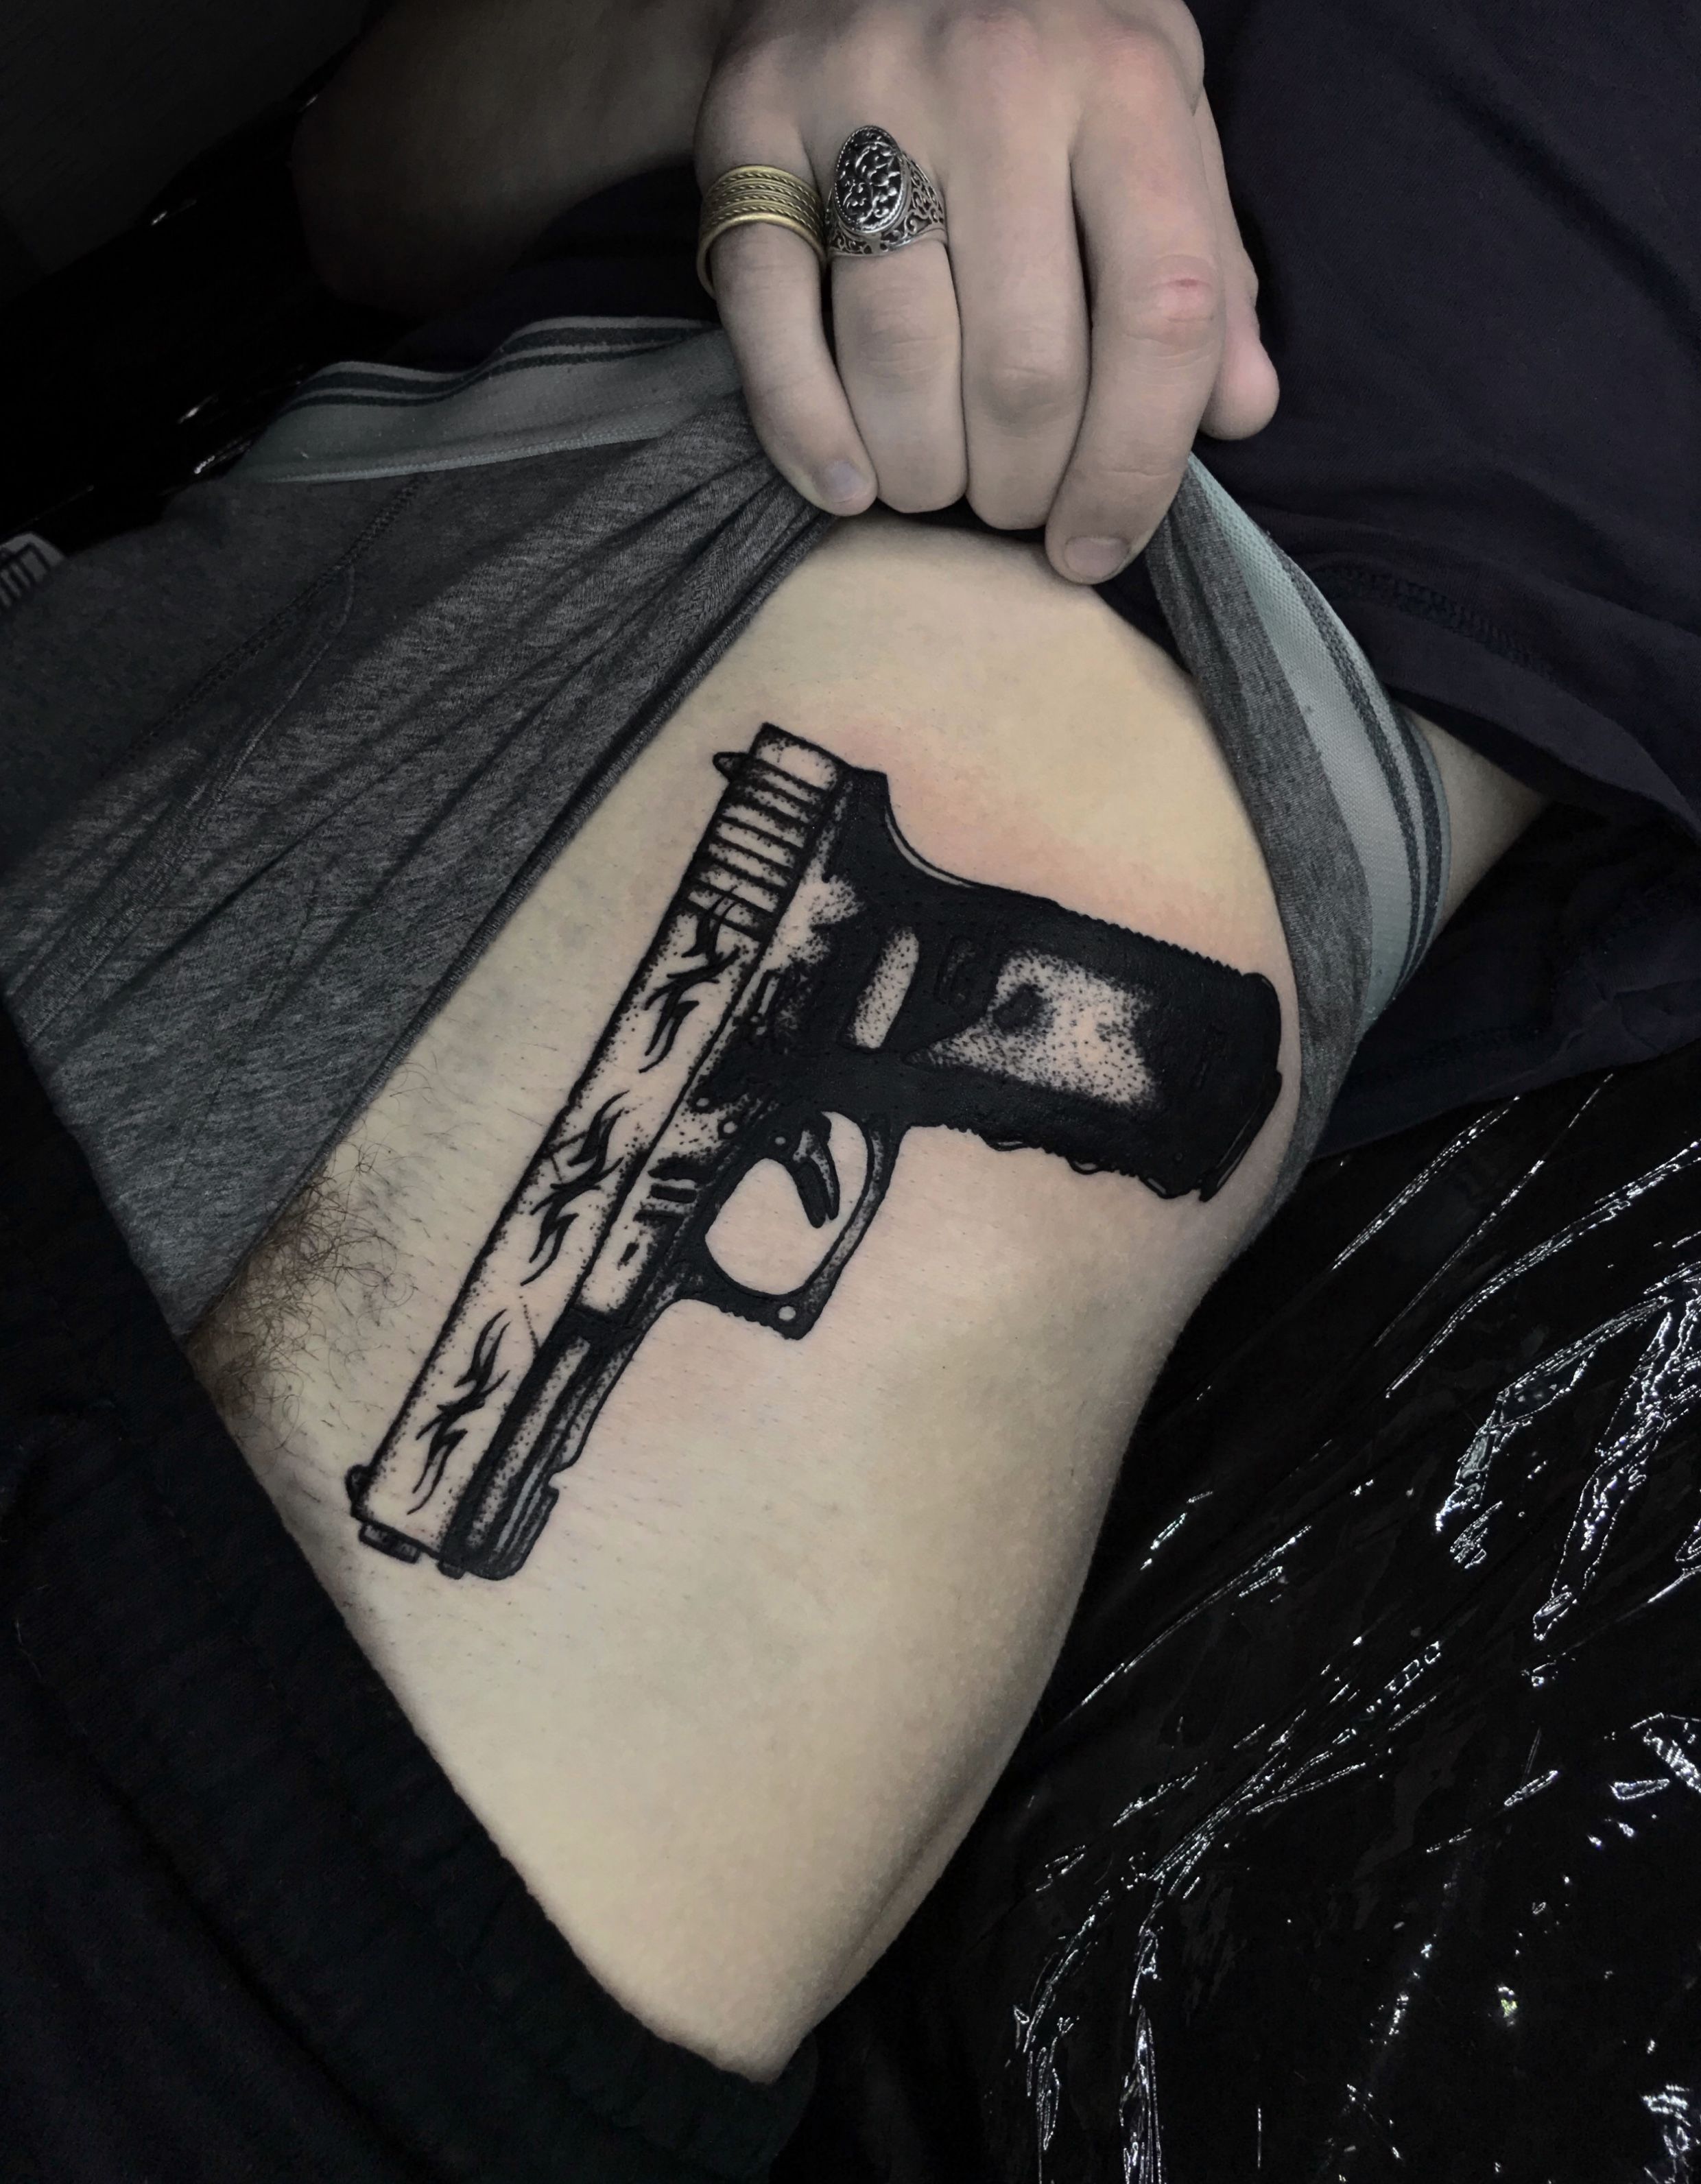 Brantley Gilbert gets giant Second Amendment gun tattoo